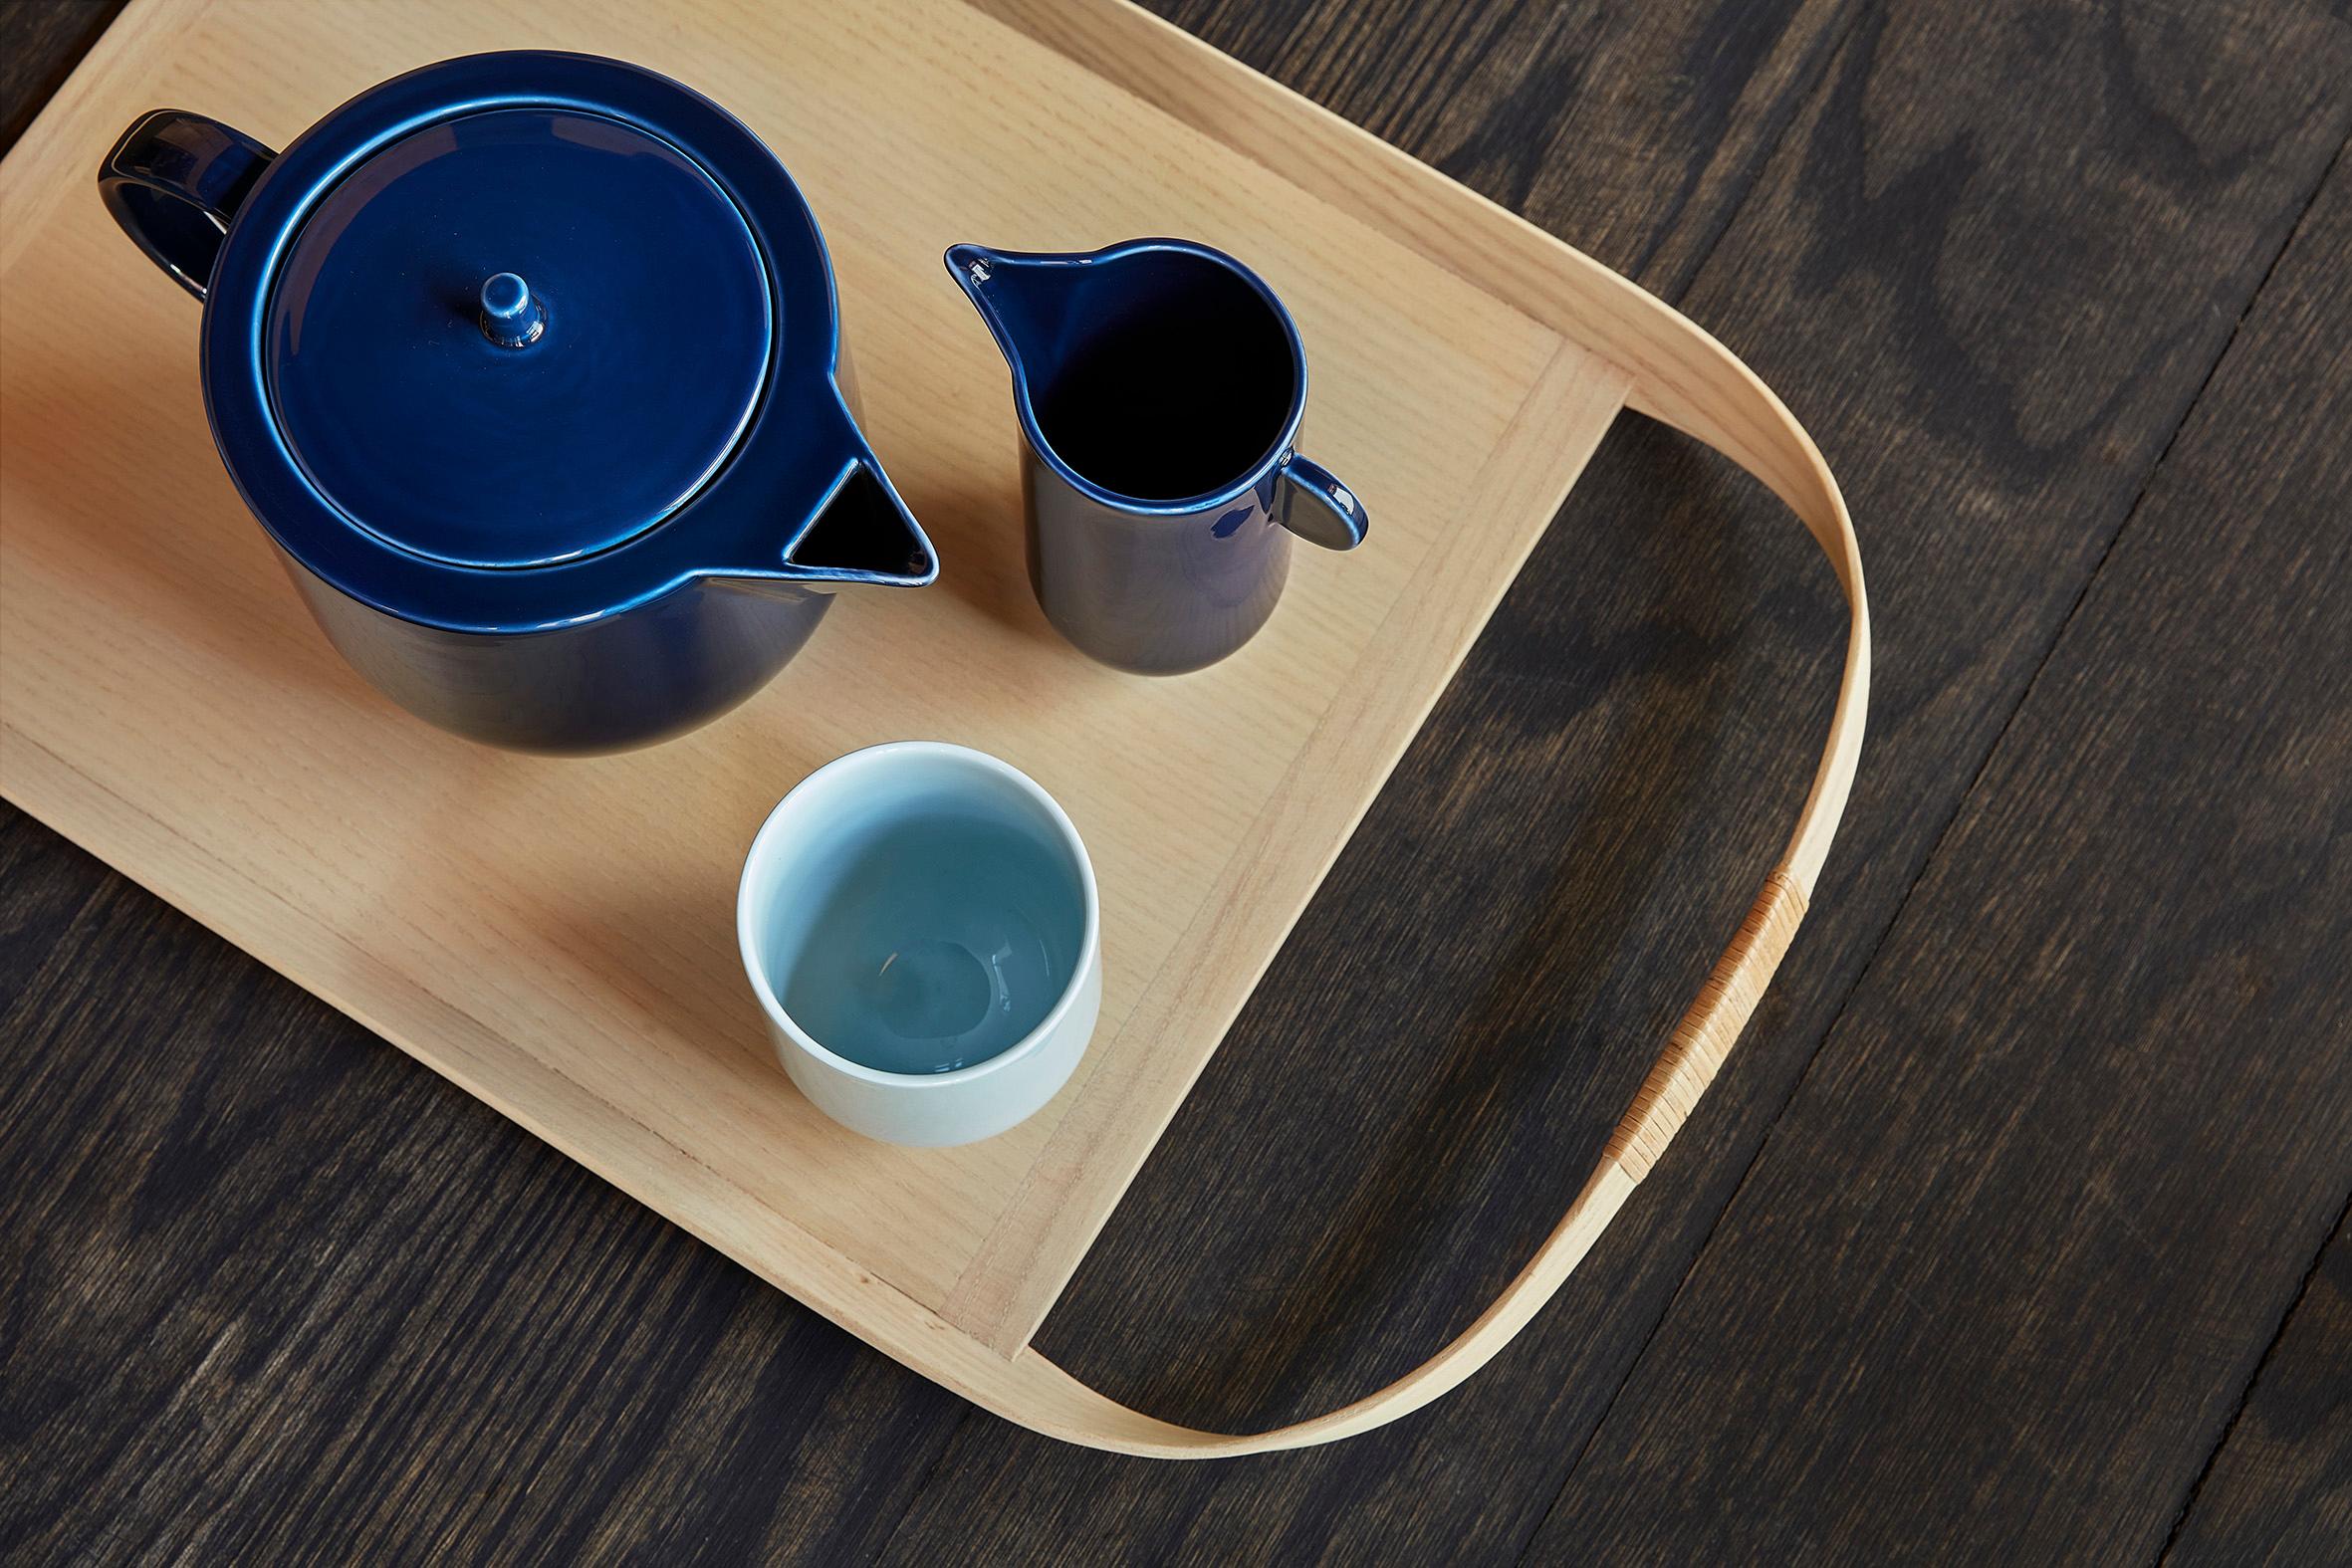 La théière YOKO est un élément important et distinctif de la vaisselle. Sa forme simple et sculpturale, aux arêtes fermes et tranchantes, met à l'épreuve le matériau tendre qu'est la porcelaine.

La théière est disponible en rouge et en bleu marine